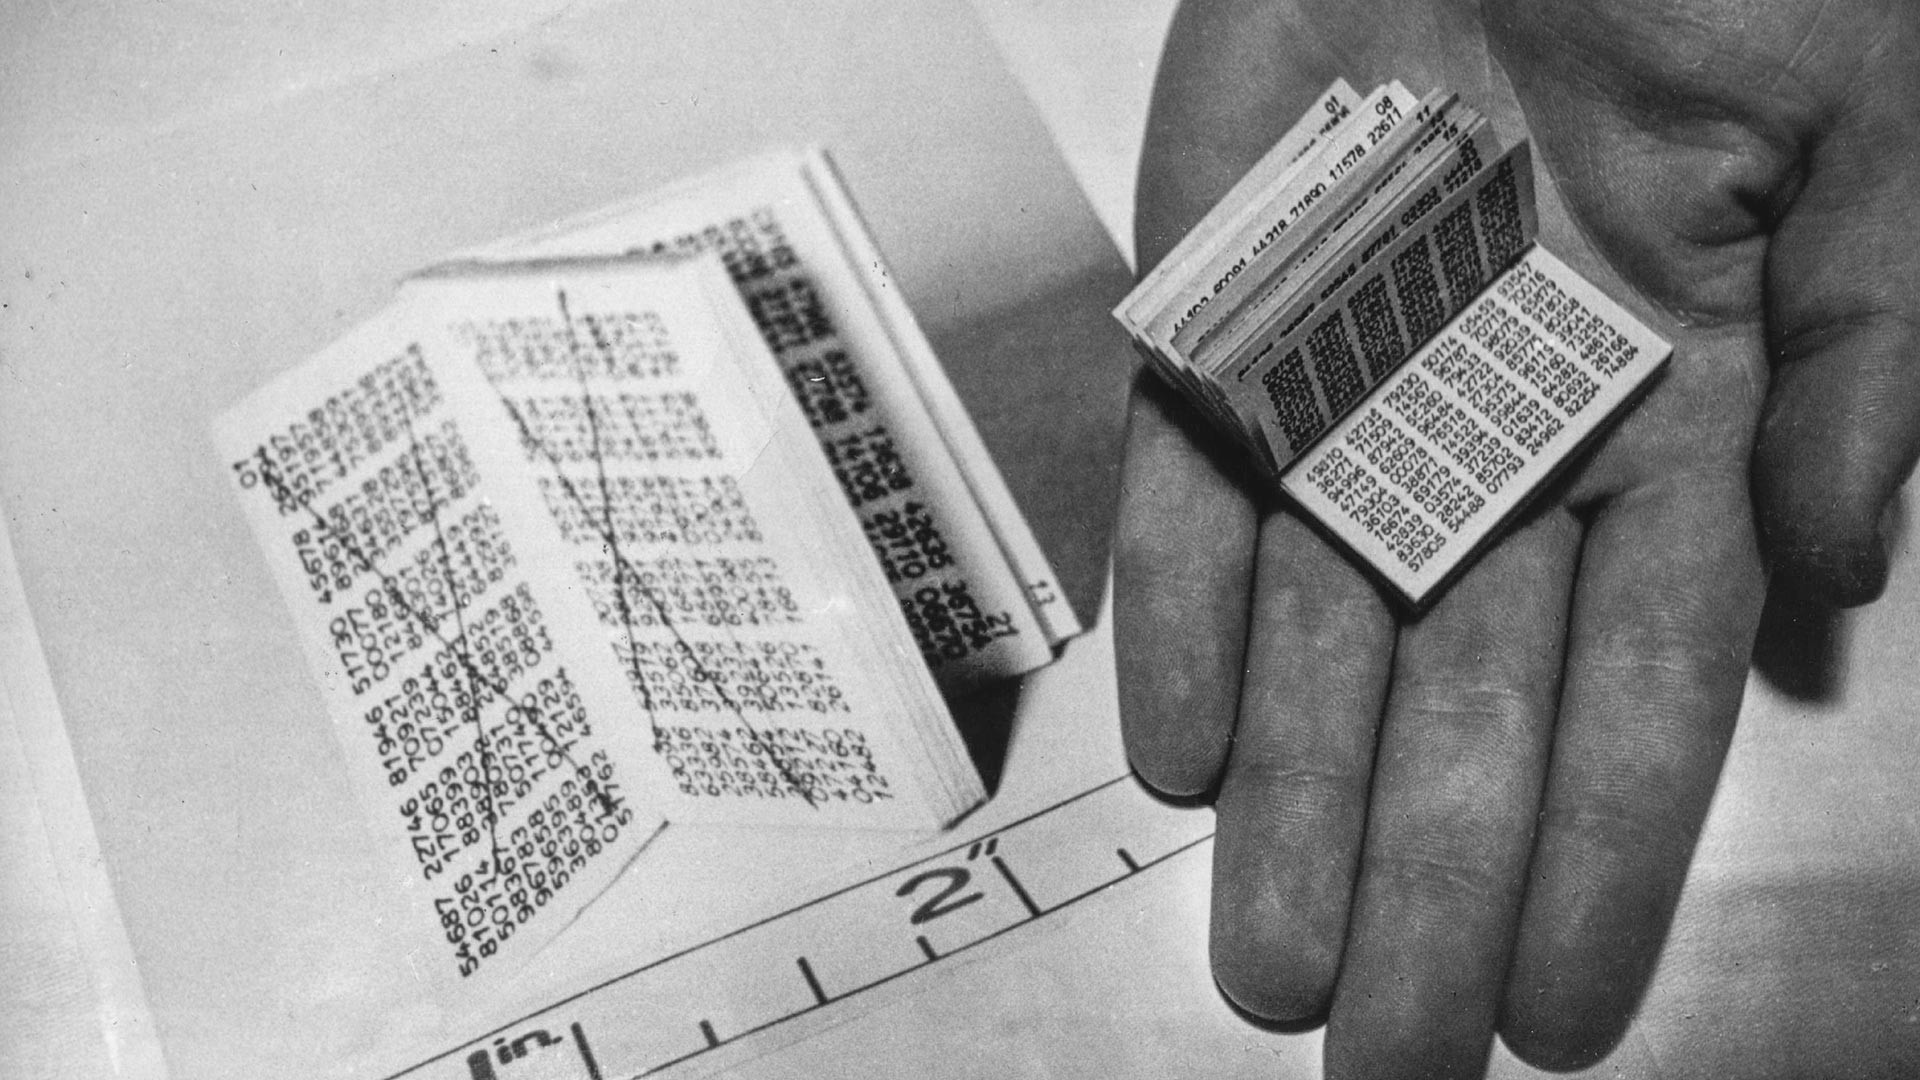 Миниатюрната кодова книга, която съдържа поредица от цифри, която според генералния прокурор сър Елвин Джоунс е била използвана от шпиони за декодиране на съобщения от Москва. Увеличен образ отляво.